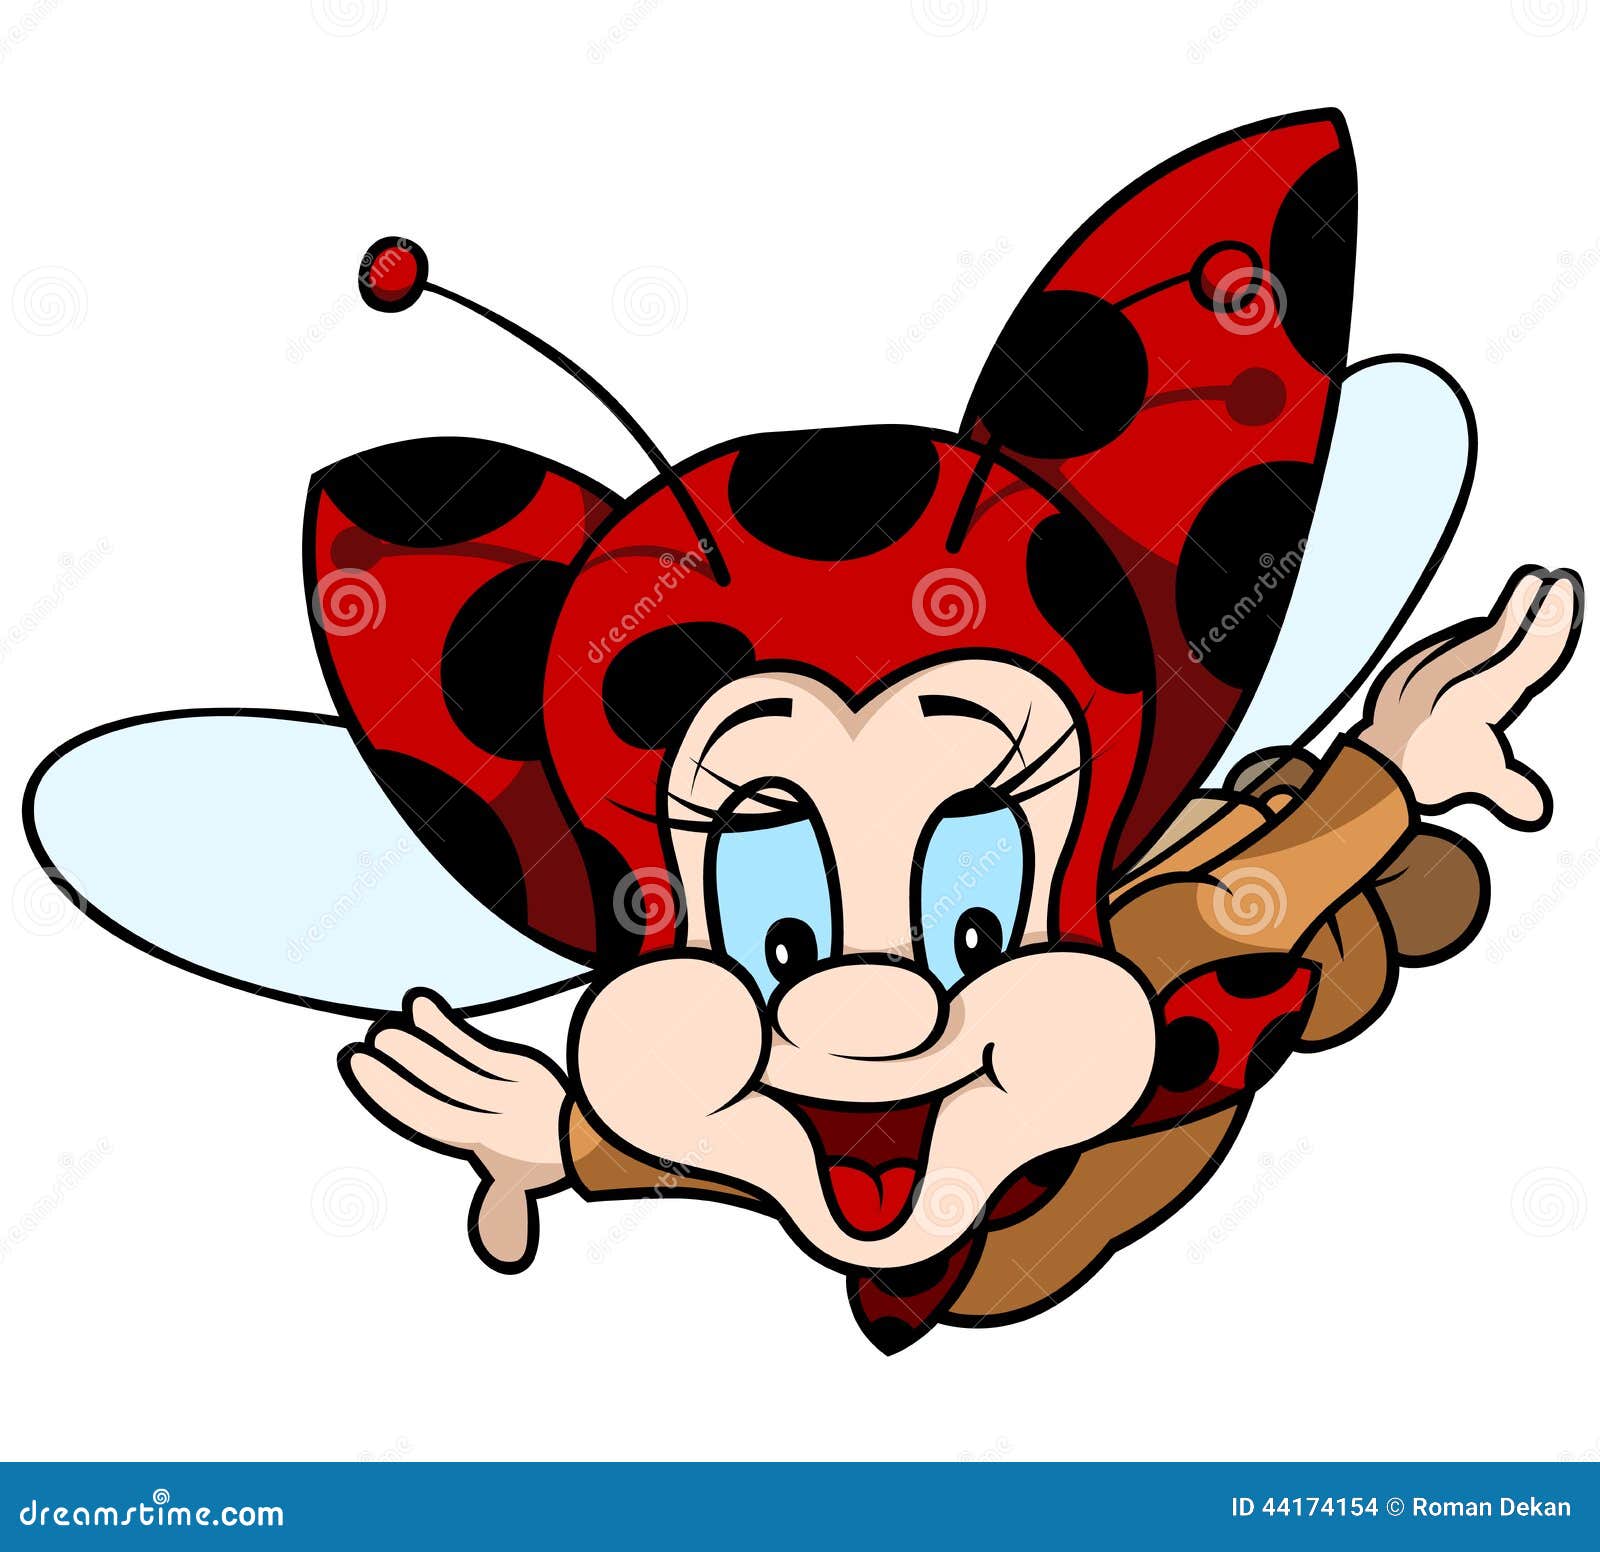 flying ladybug clipart - photo #30